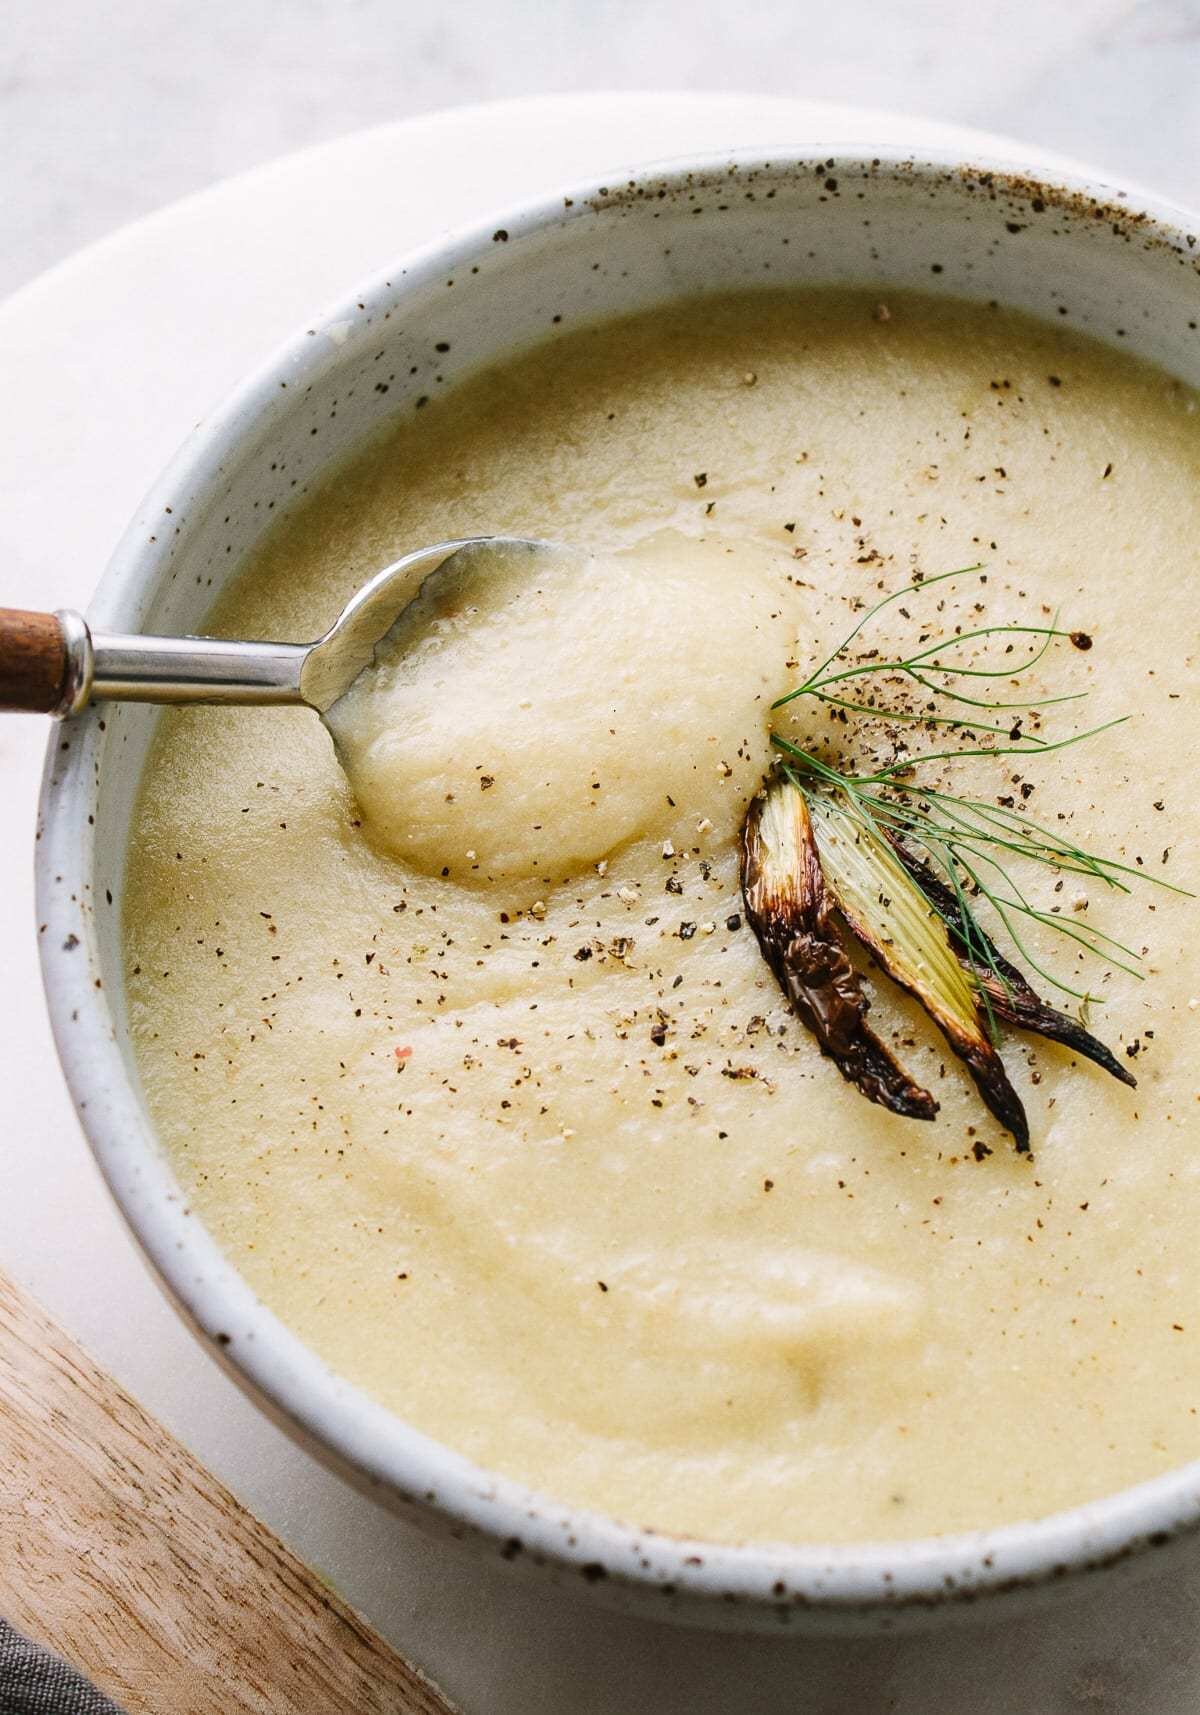 fennel-and-potato-soup-recipe.jpg